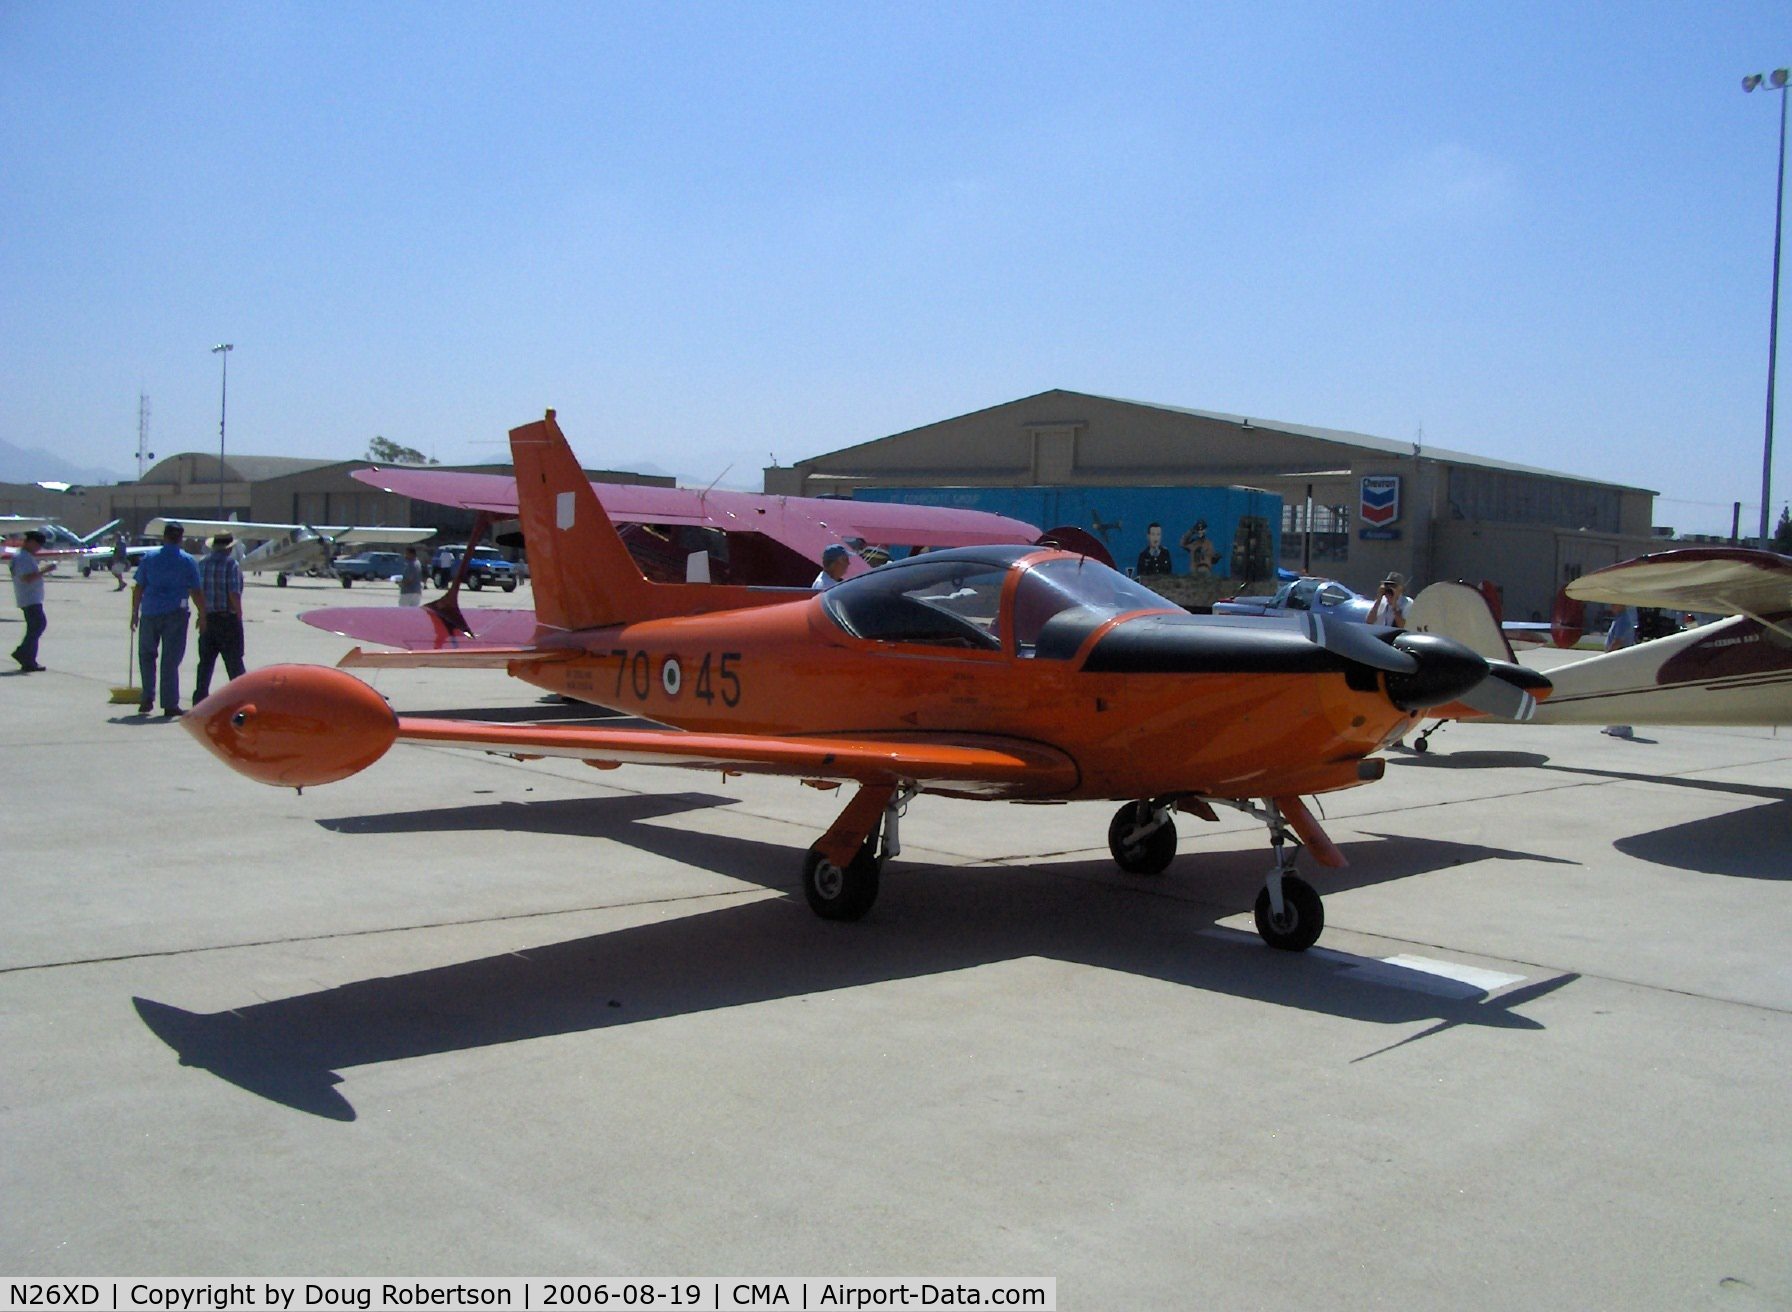 N26XD, 1987 SIAI-Marchetti F-260C C/N 40-016, SIAI-Marchetti F.260C, Lycoming O-540-D4A5 260 Hp